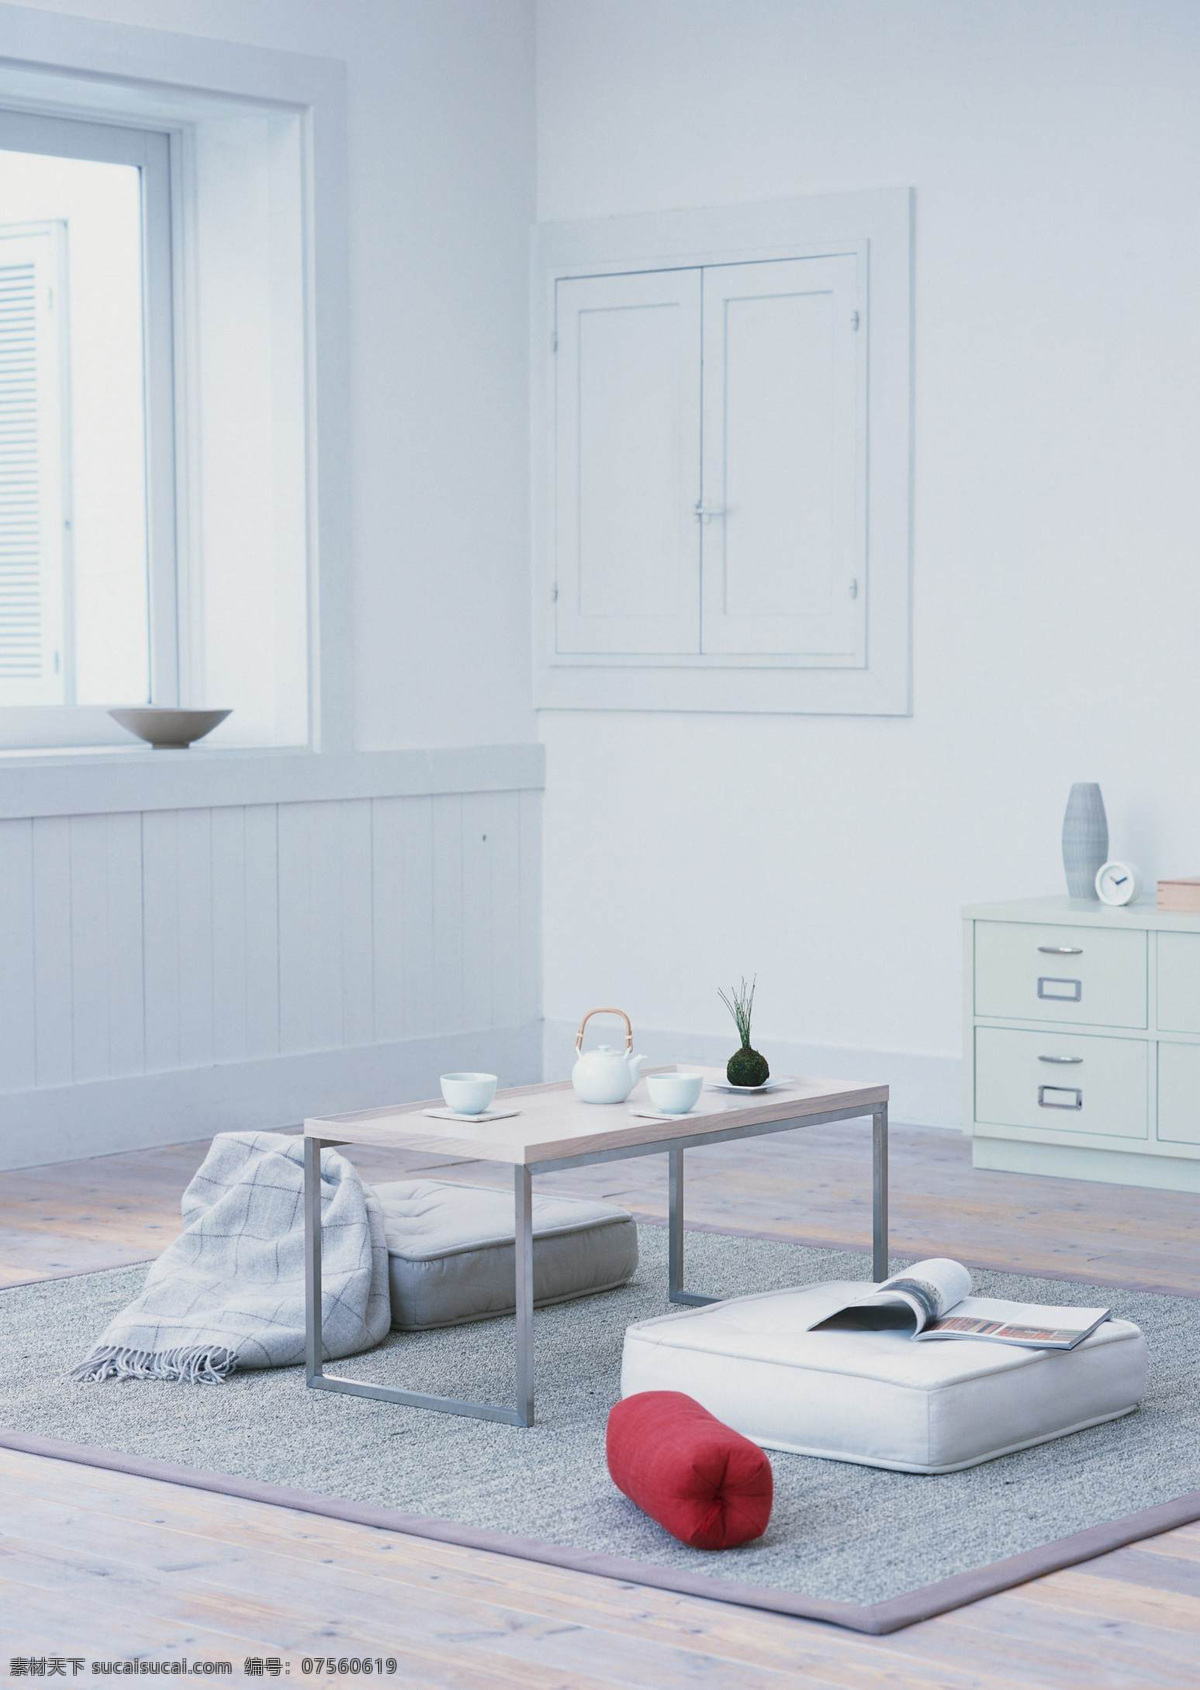 简单 茶室 白色 简约 室内 家居装饰素材 室内设计